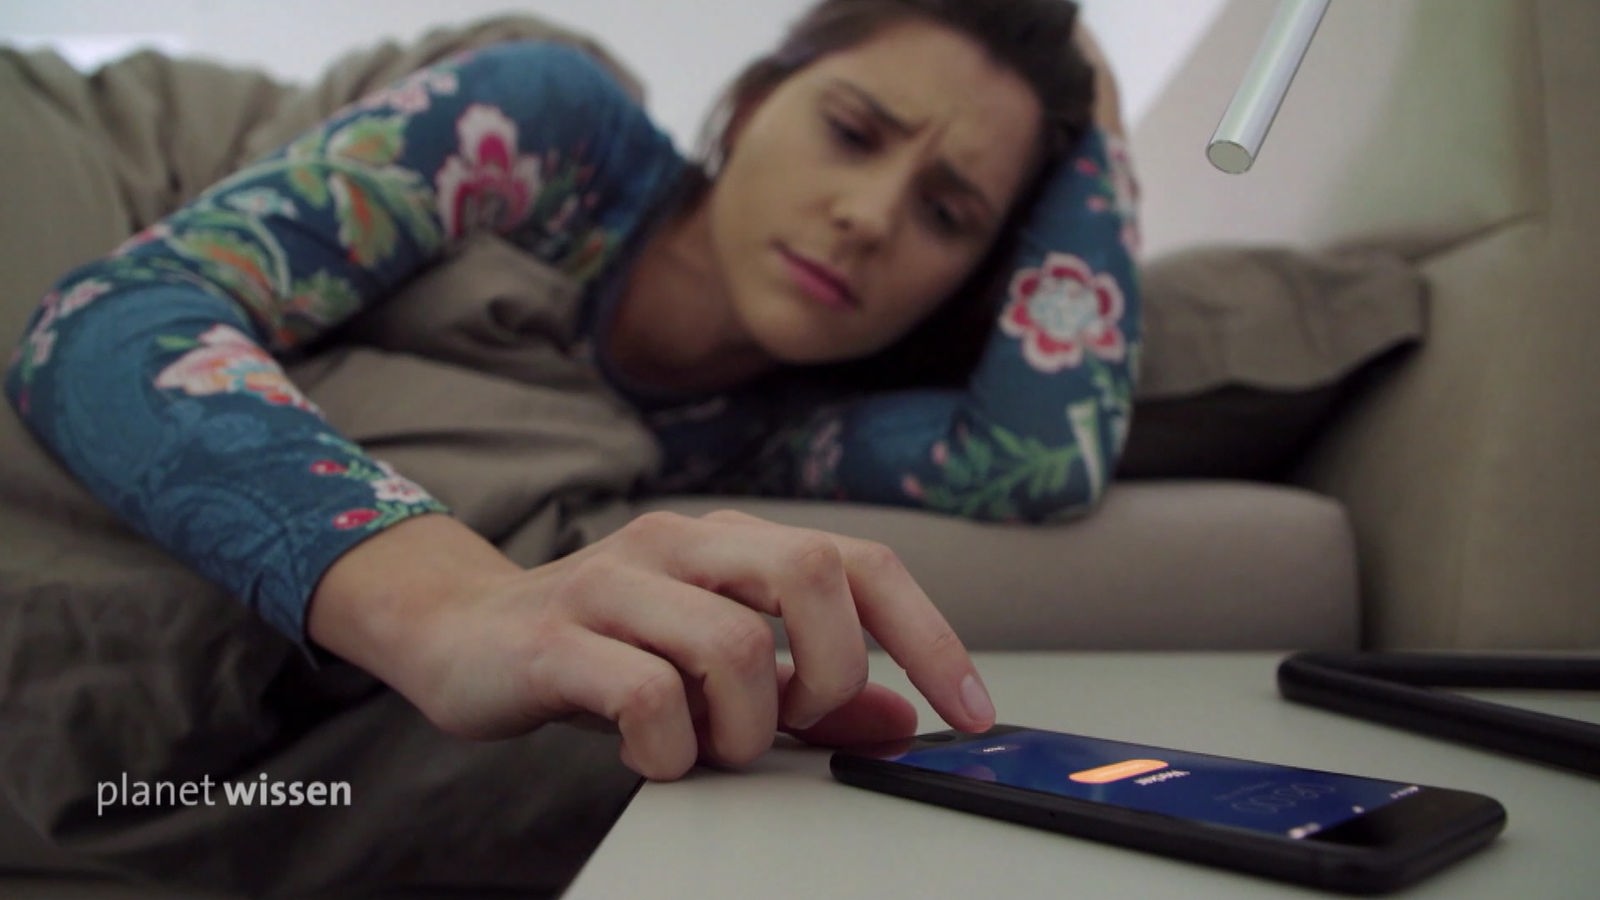 Eine junge Frau liegt im Bett und schaut genervt auf ihr Handy.